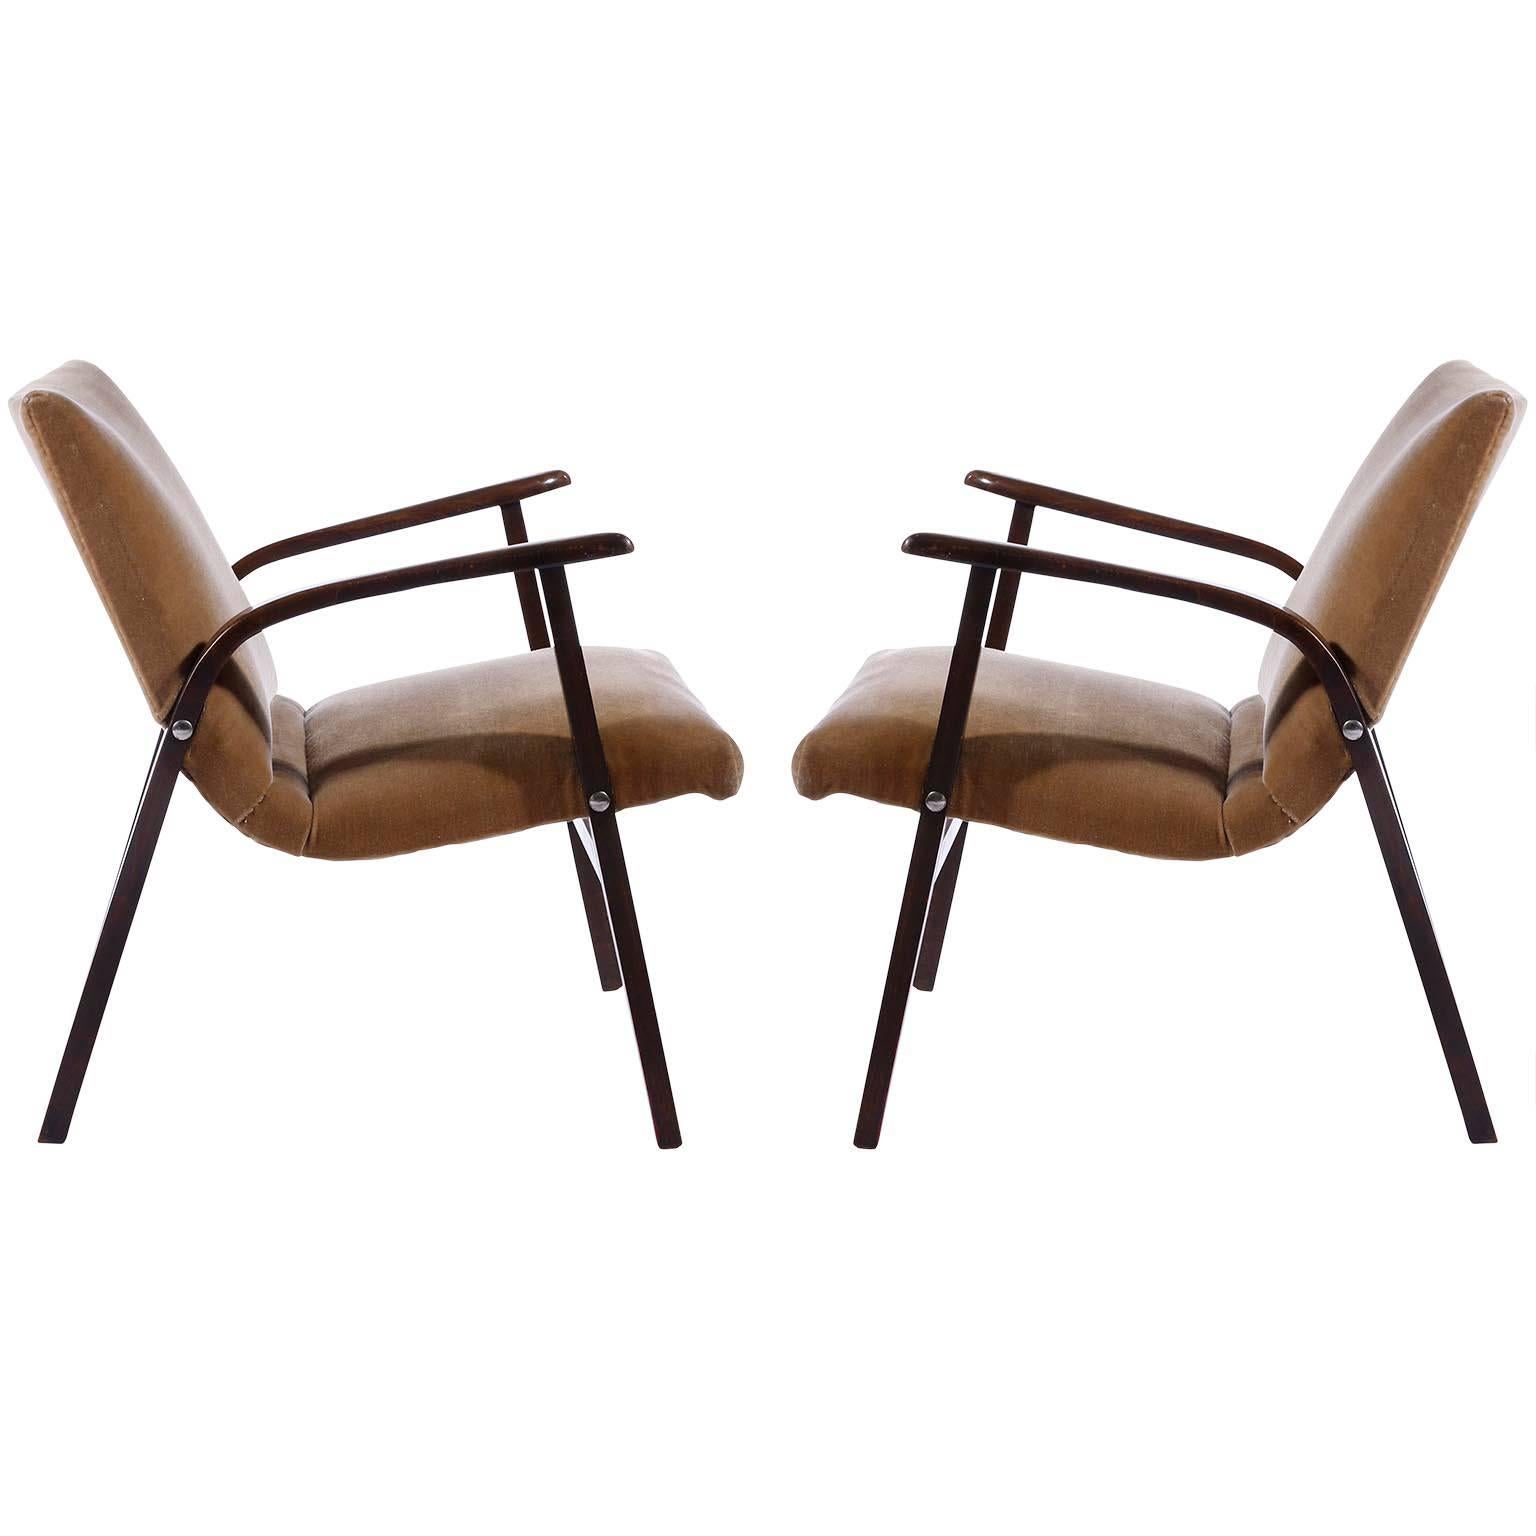 Paire de chaises longues du milieu du siècle conçues par Roland Rainer pour le Café Ritter à Vienne, Autriche, en 1952 et fabriquées par Emil & Alfred Pollak.
Les chaises sont en très bon état. Il est très probable qu'ils aient été retapissés avec